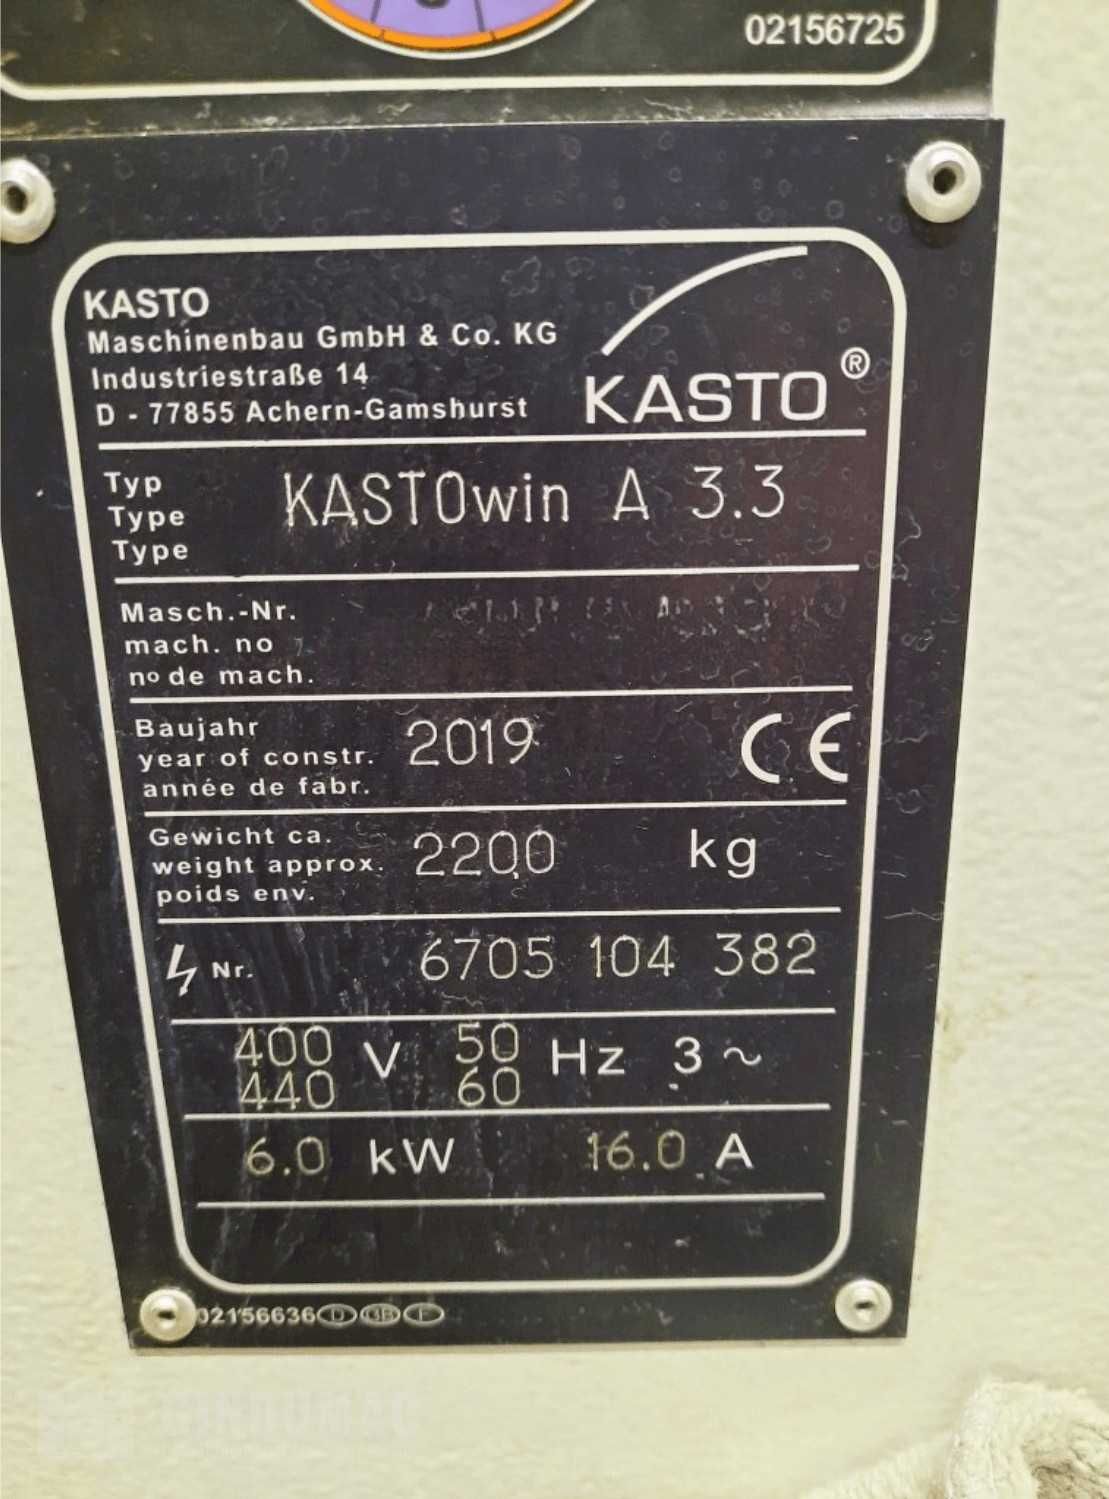 Piła taśmowa KASTOwin A 3.3 (2019)